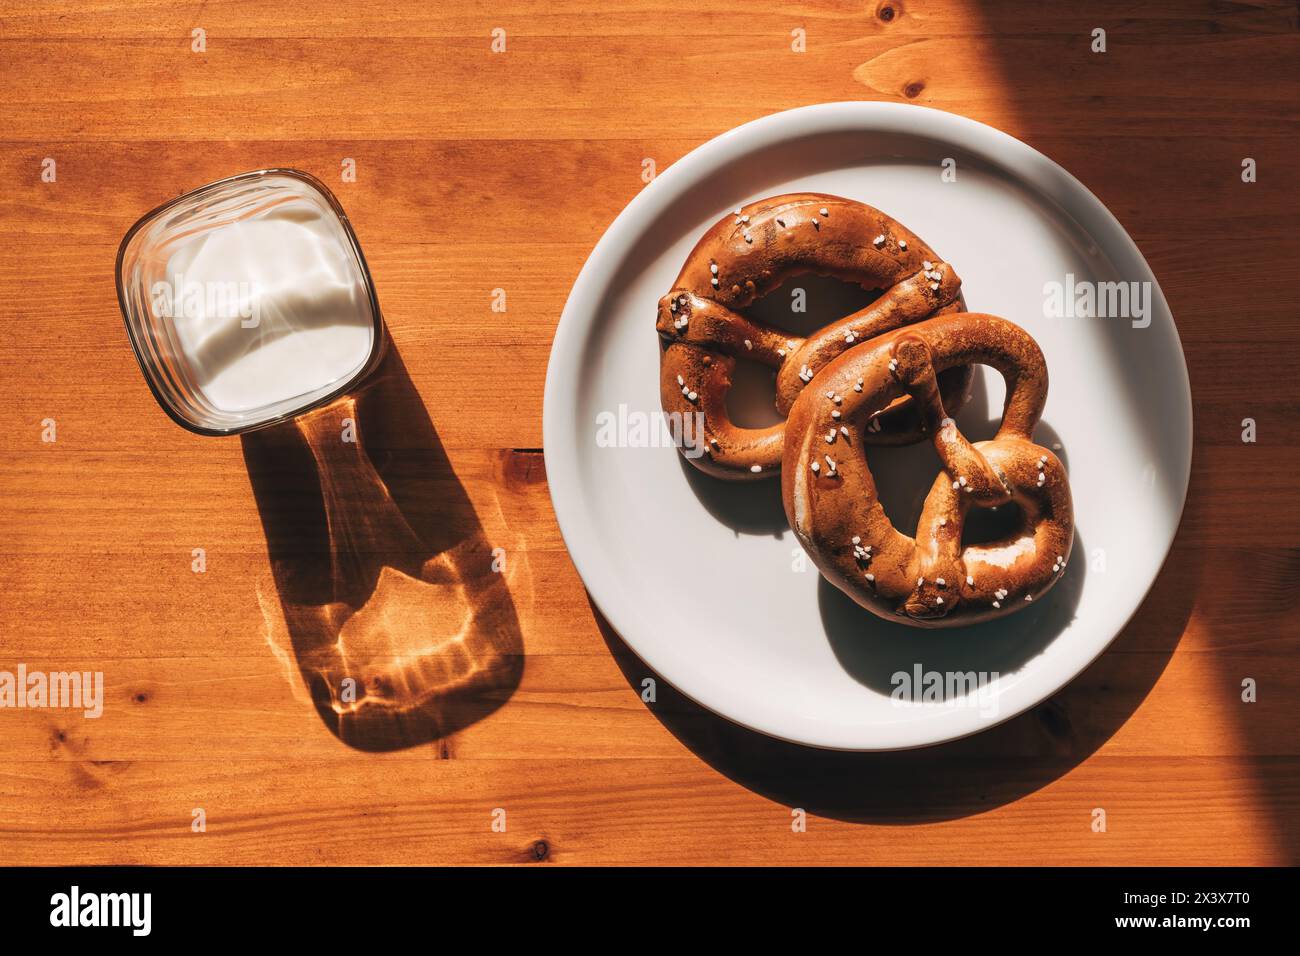 La mattina, due pretzel su un piatto e un bicchiere di yogurt sul tavolo sono perfetti per la colazione, vista dall'alto Foto Stock